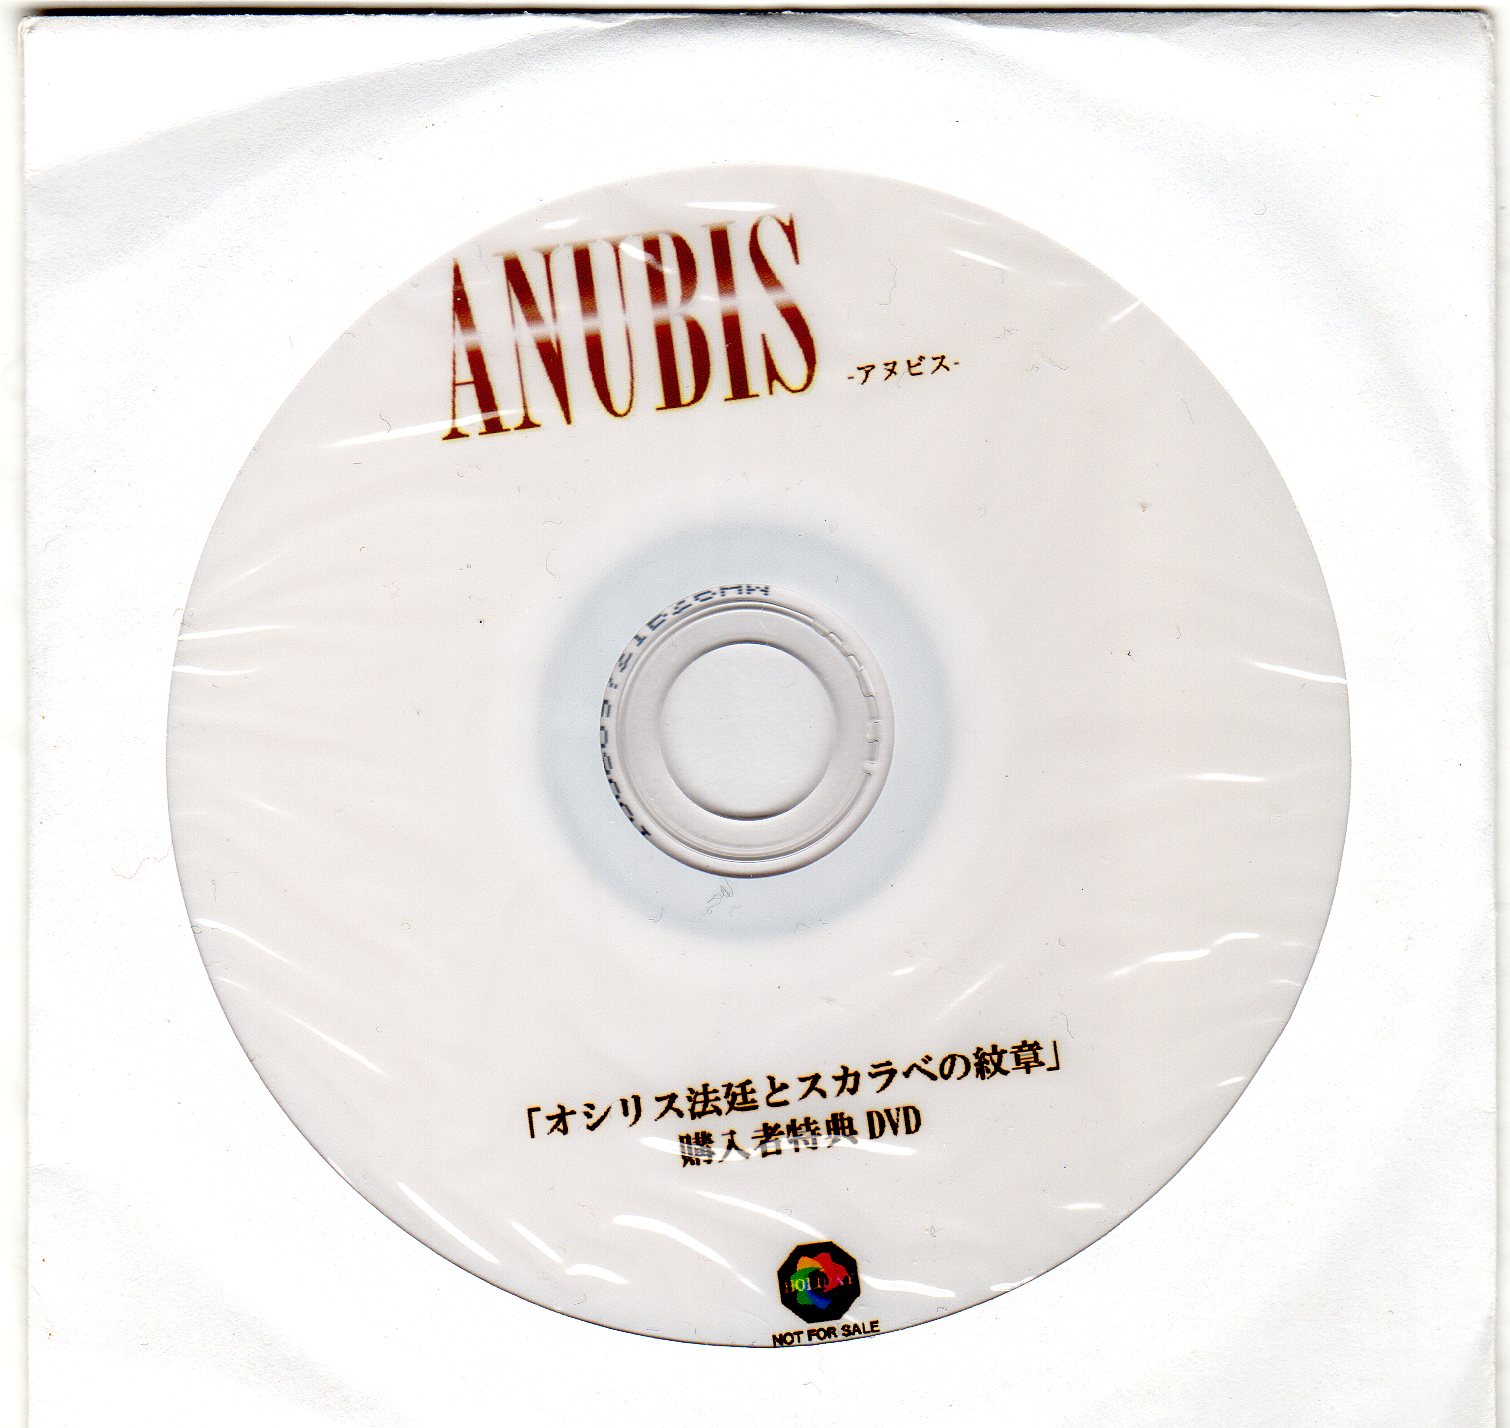 ANUBIS ( アヌビス )  の DVD 「オシリス法廷とスカラベの紋章」購入者特典DVD